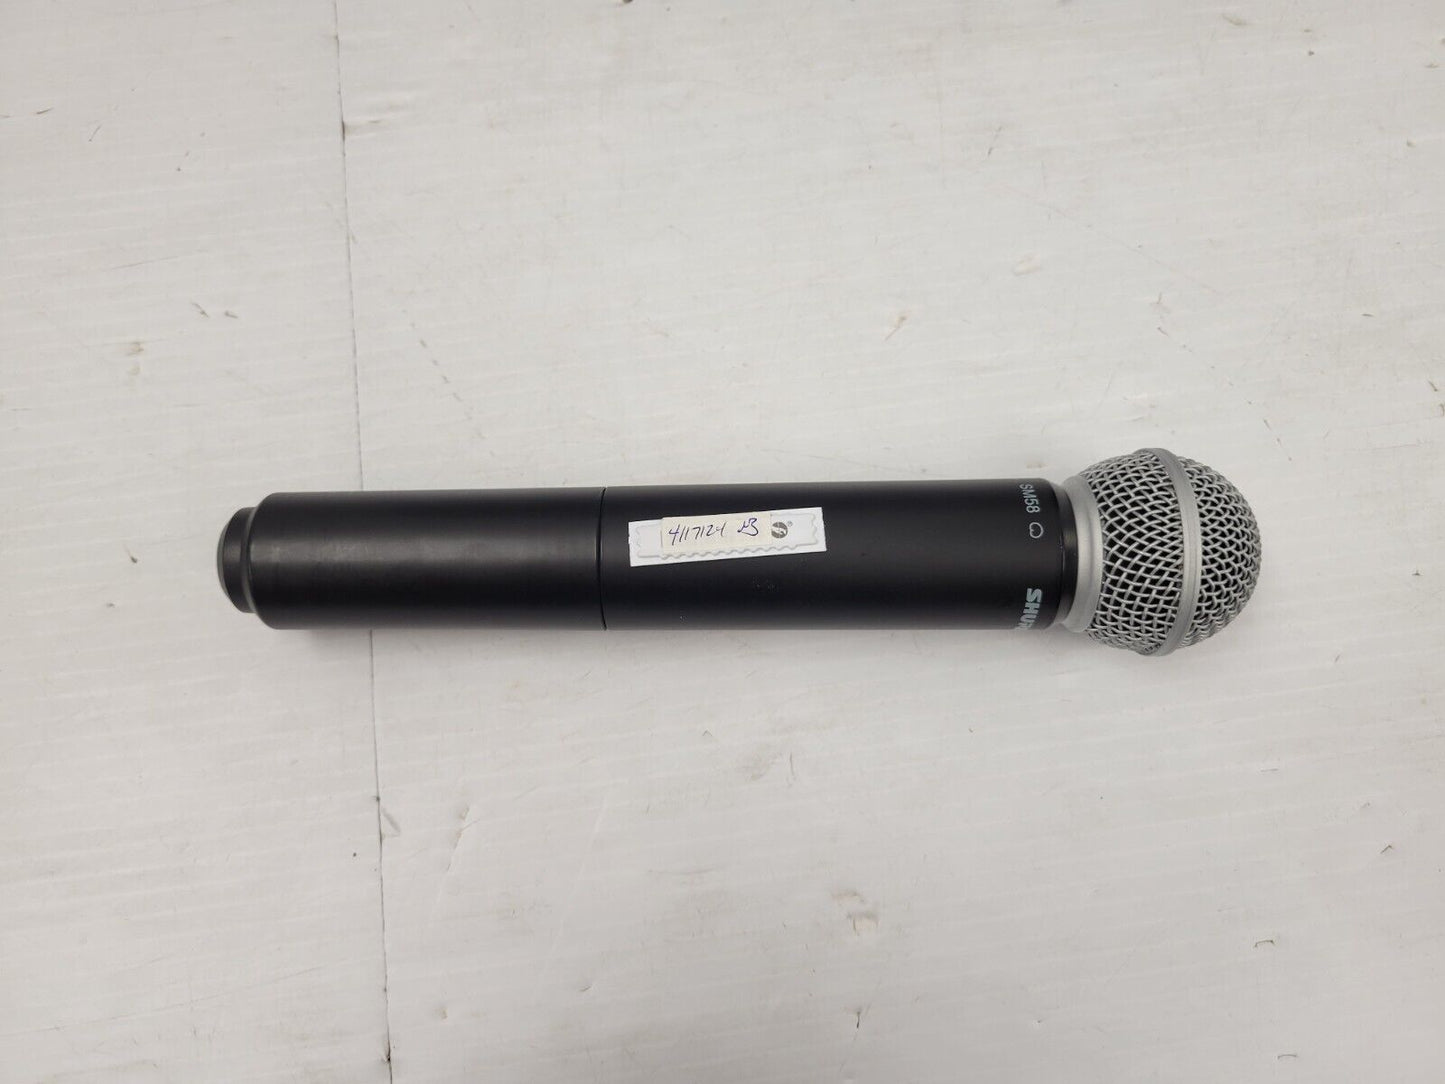 (I-34920) Shure Microphone